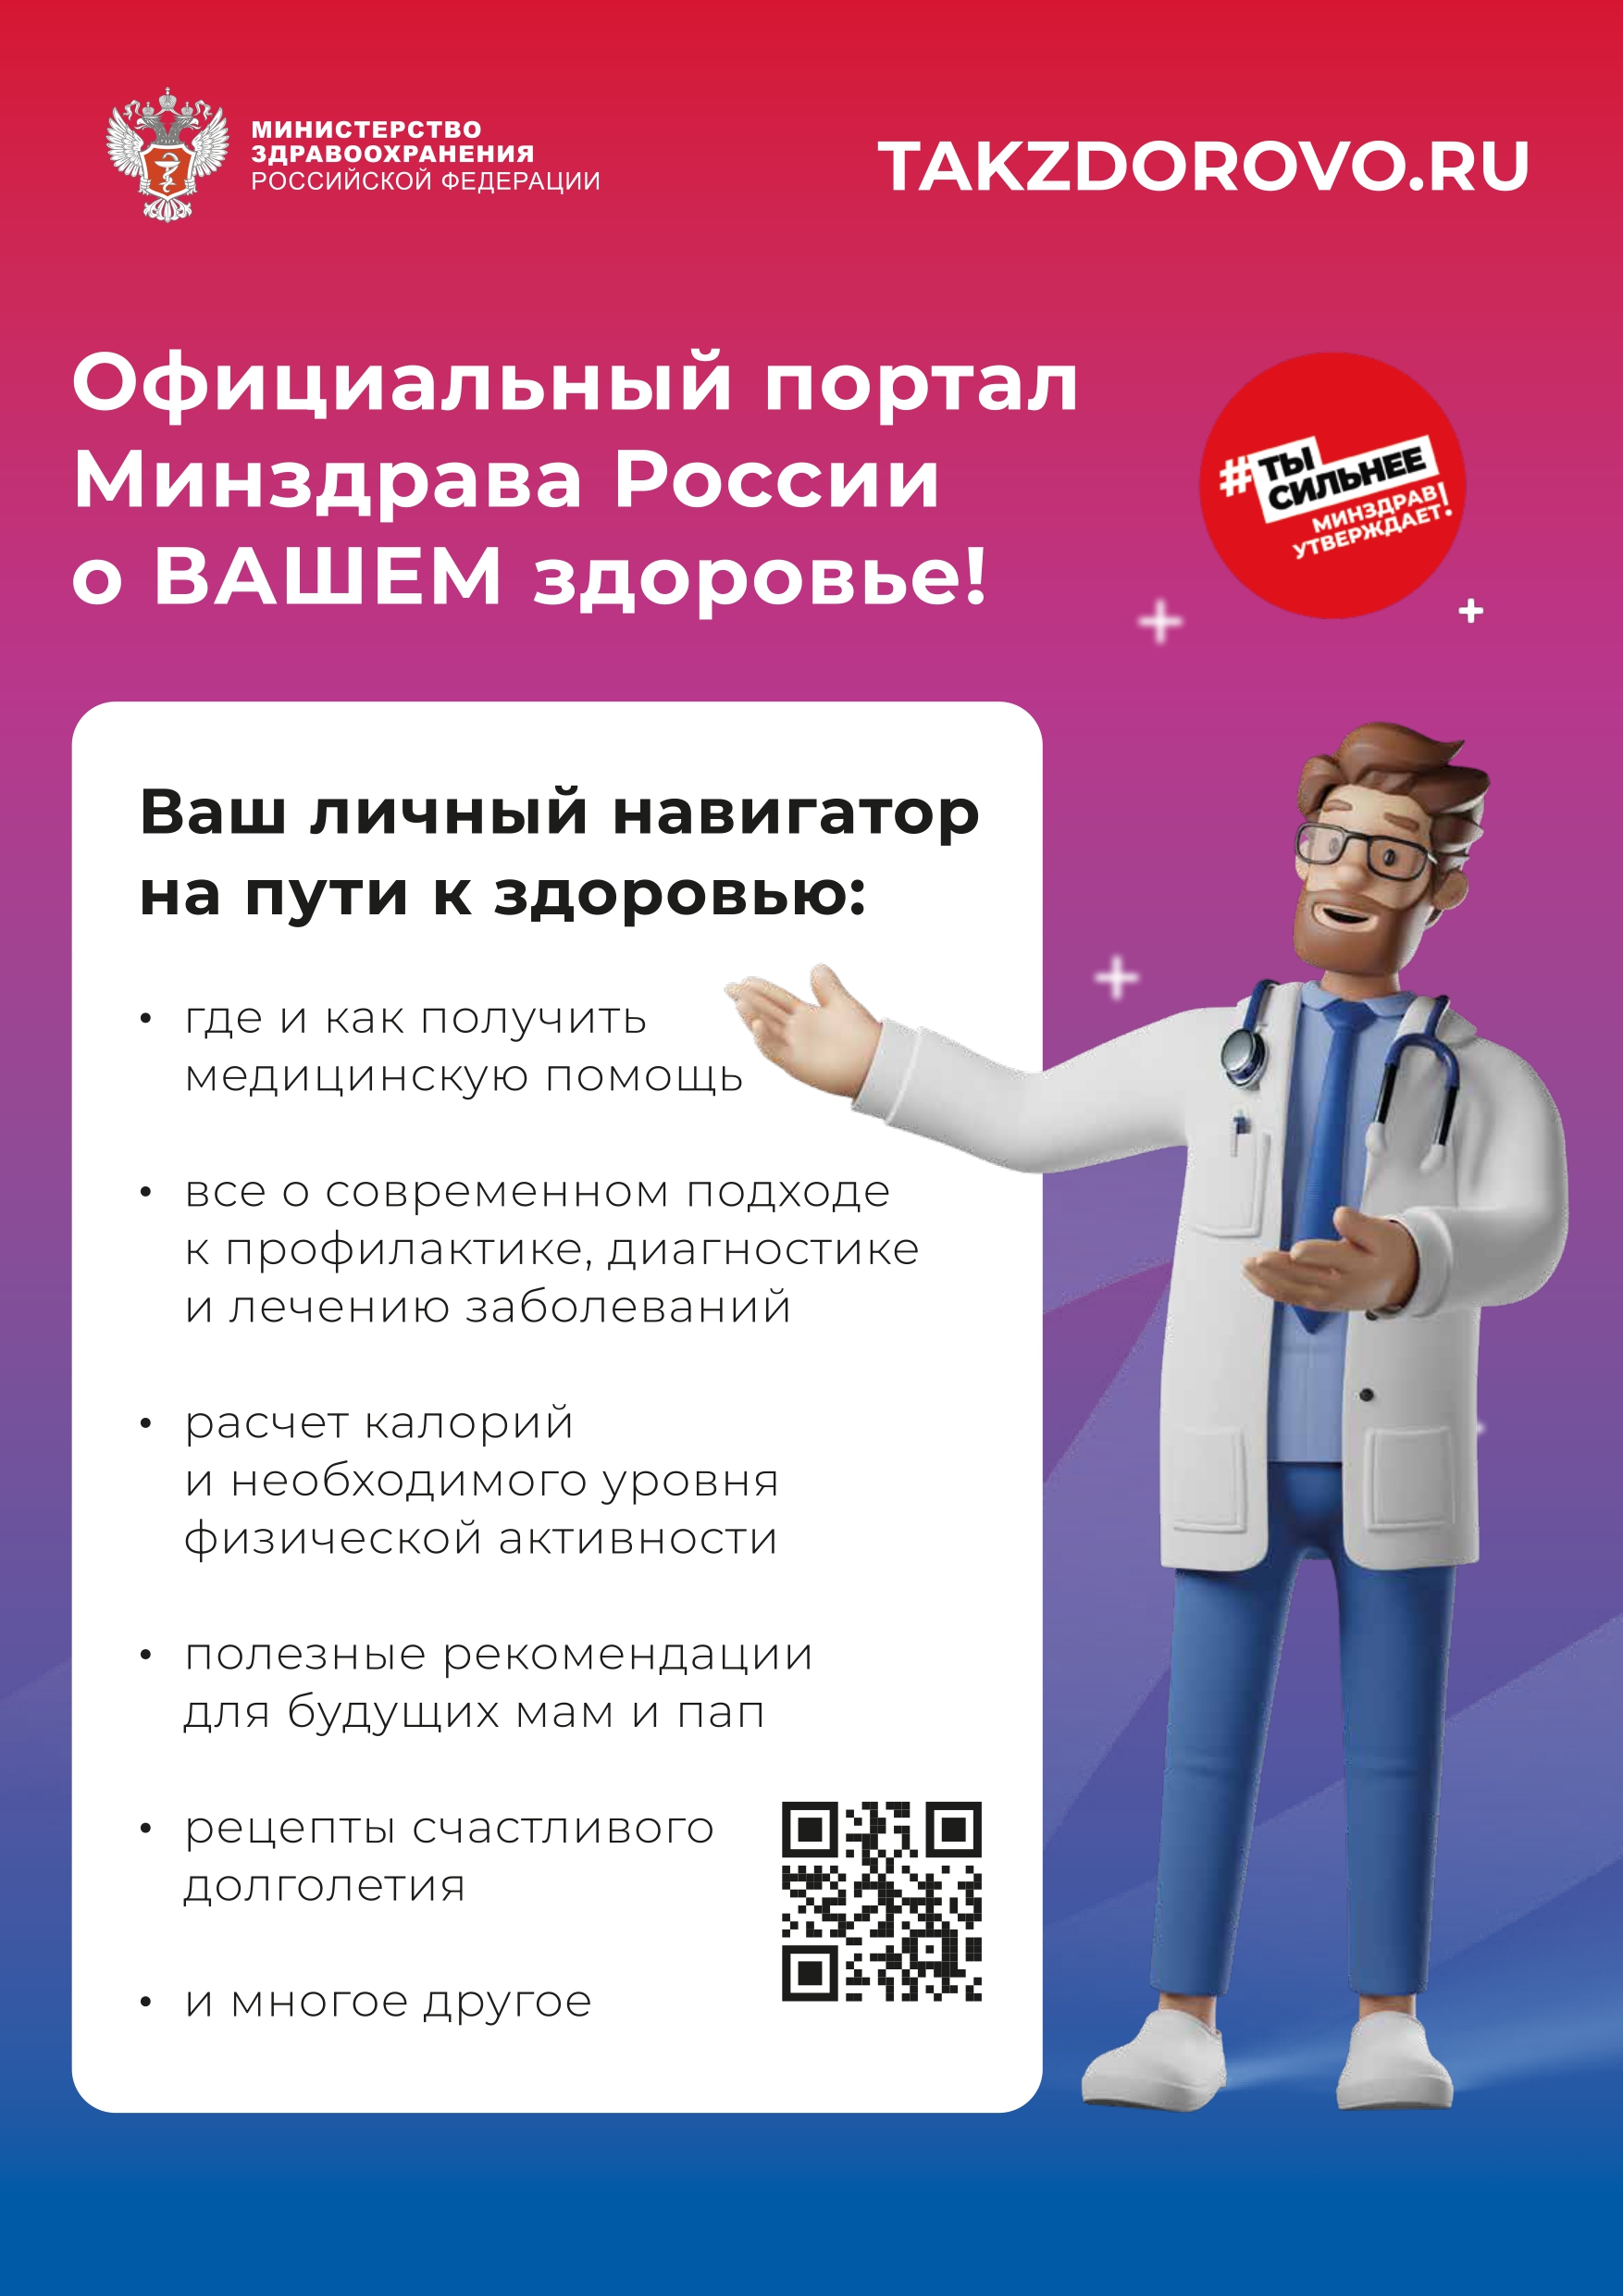 Официальный портала Минздрава России о вашем здоровье